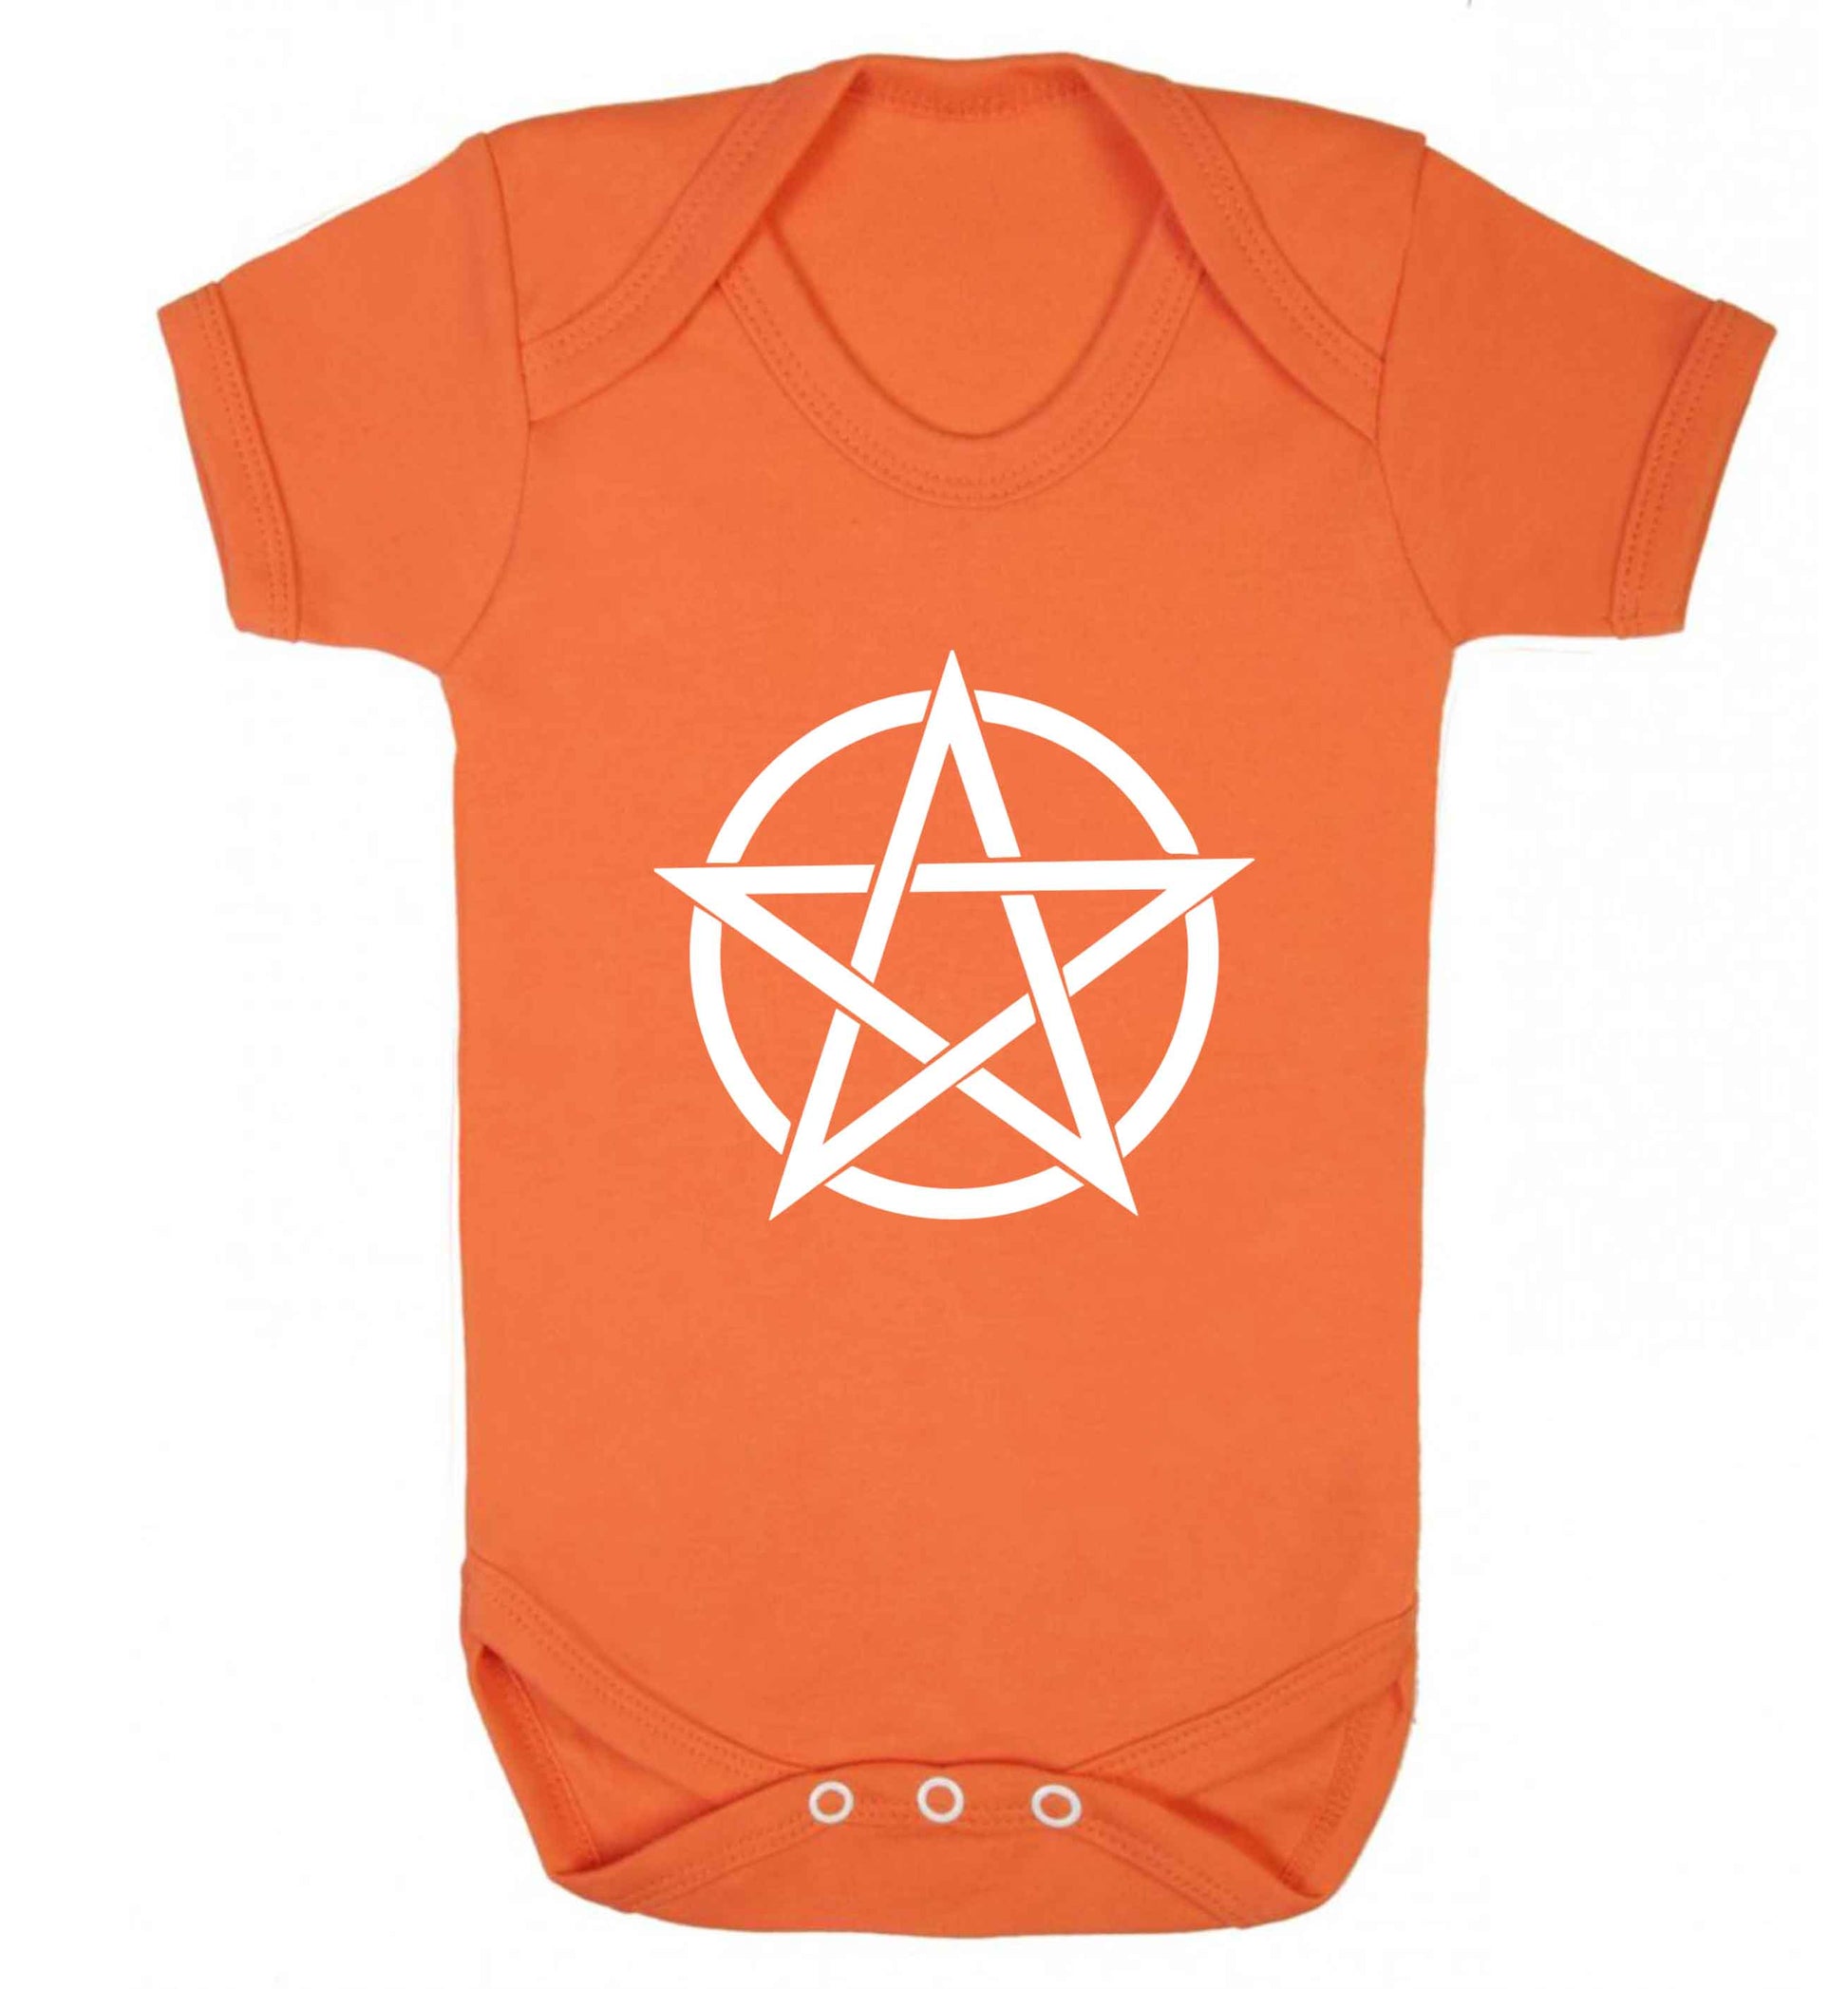 Pentagram symbol baby vest orange 18-24 months